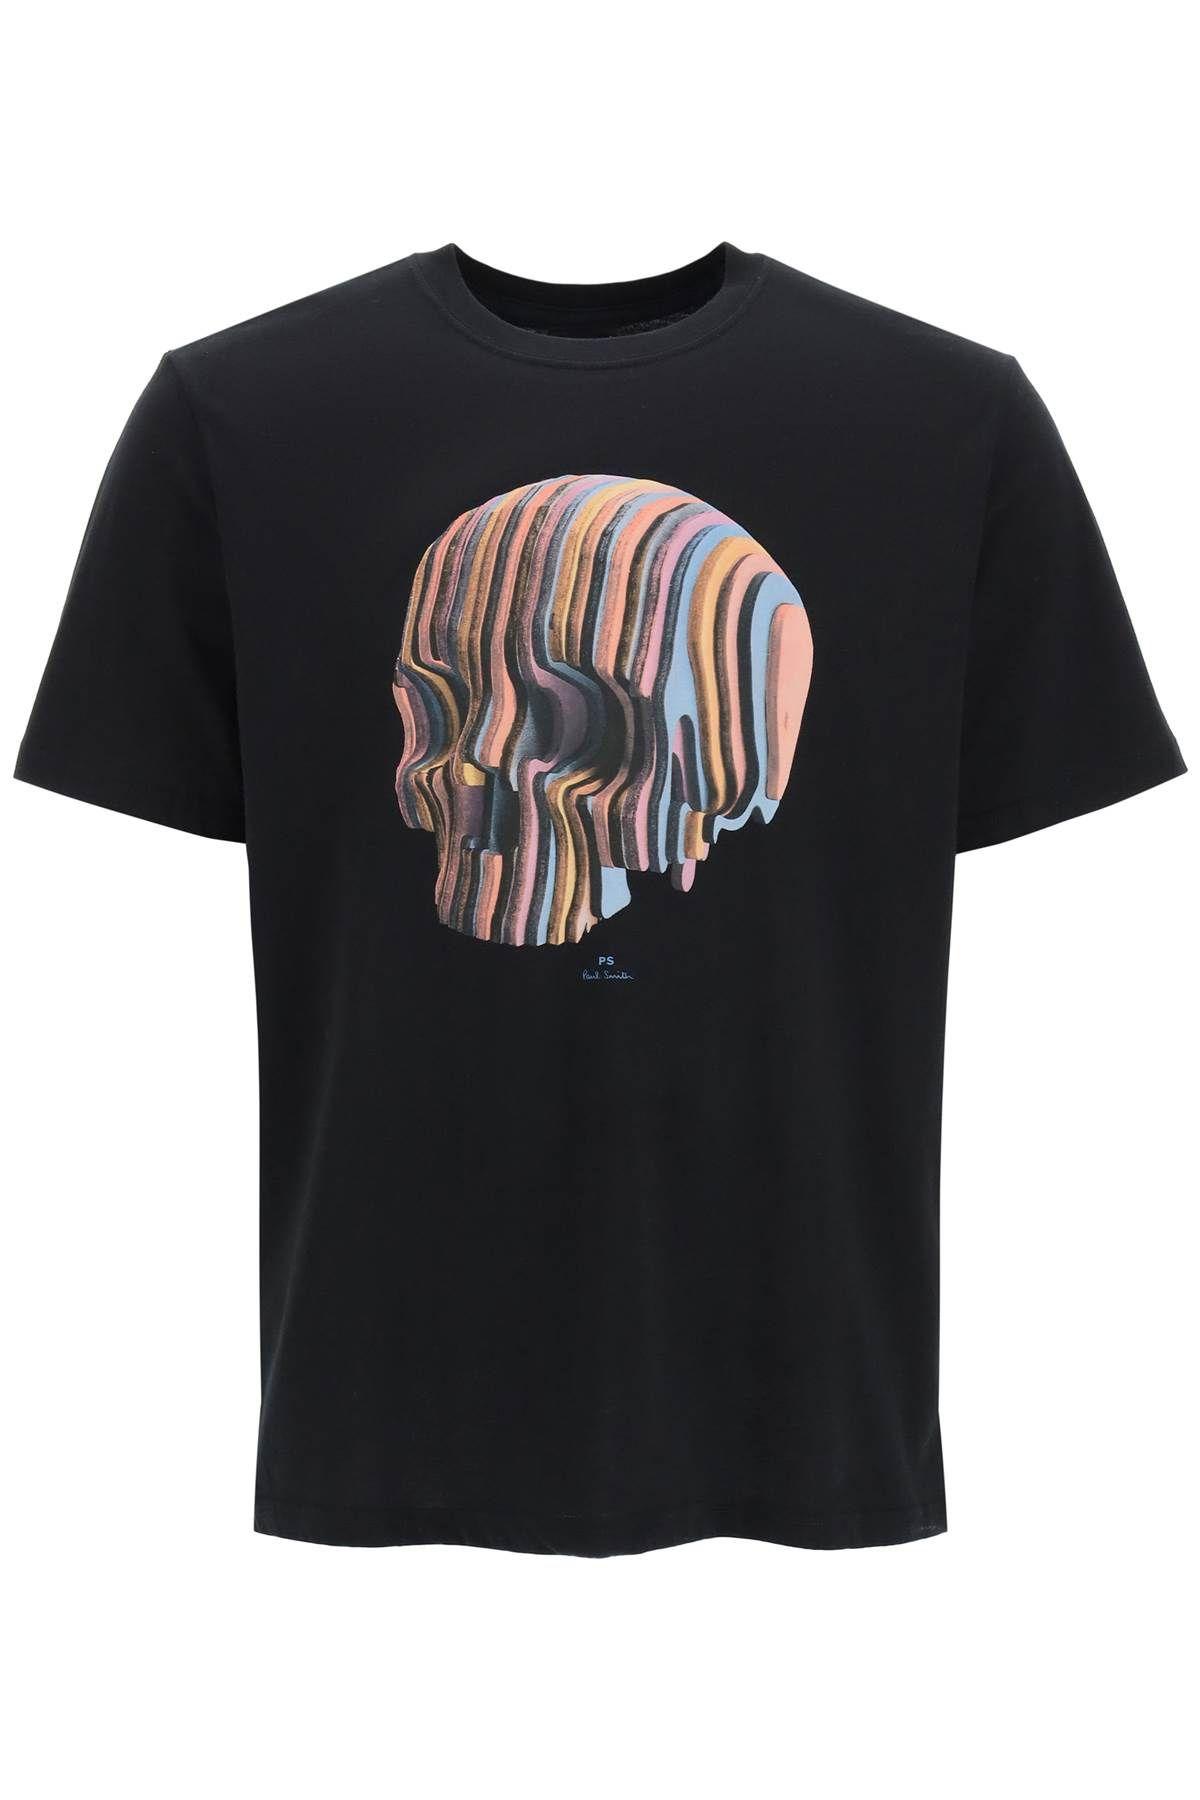 Paul Smith wooden Stripe Skull Print T-shirt